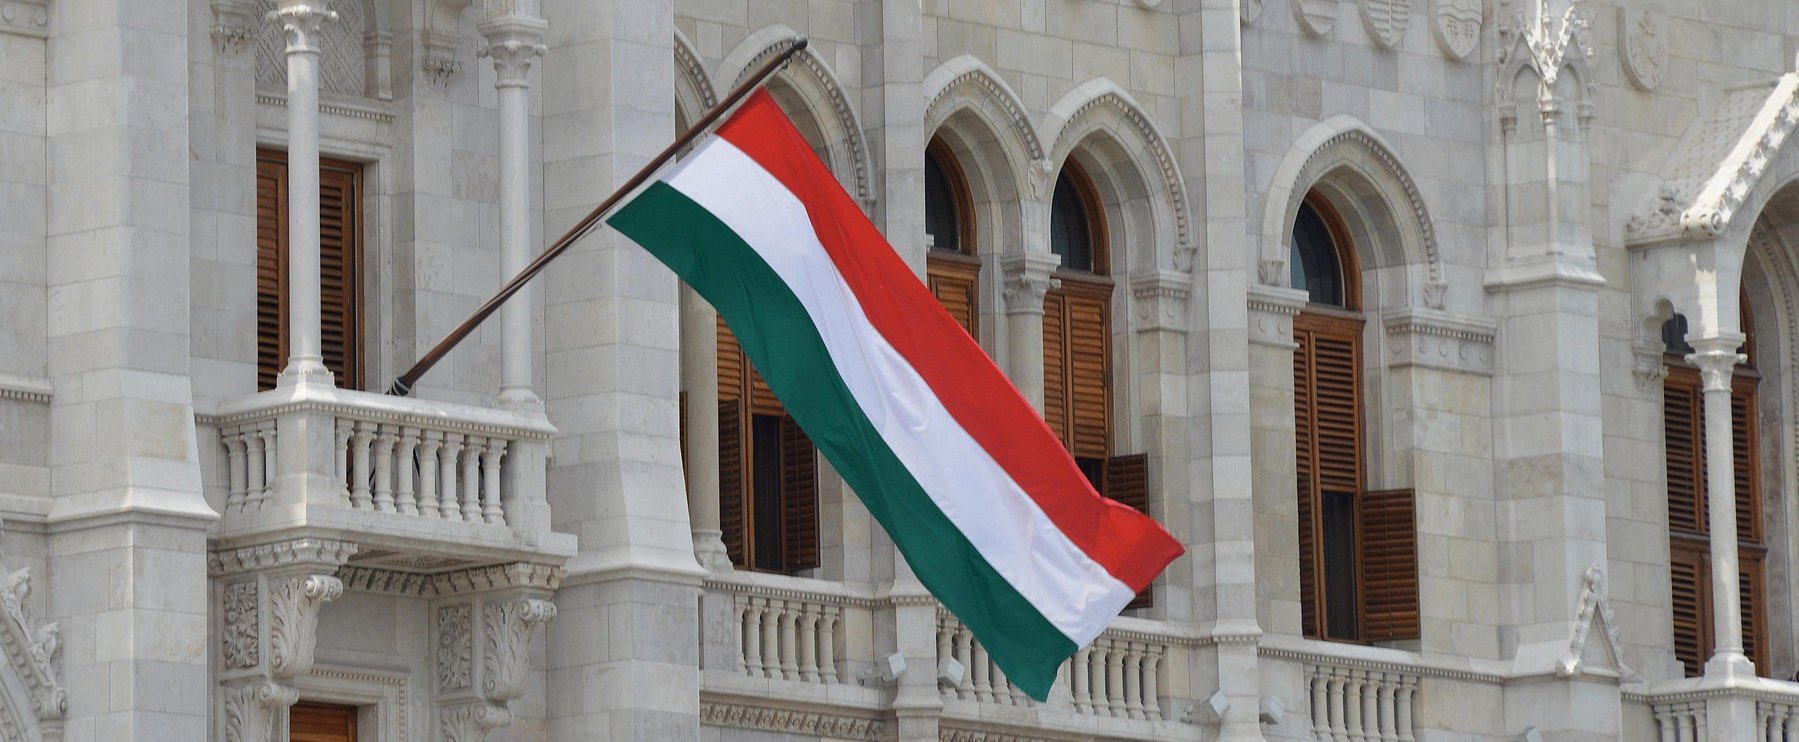 Magyarország első, mindenkit verünk ebben Európában, végre valami jó hír